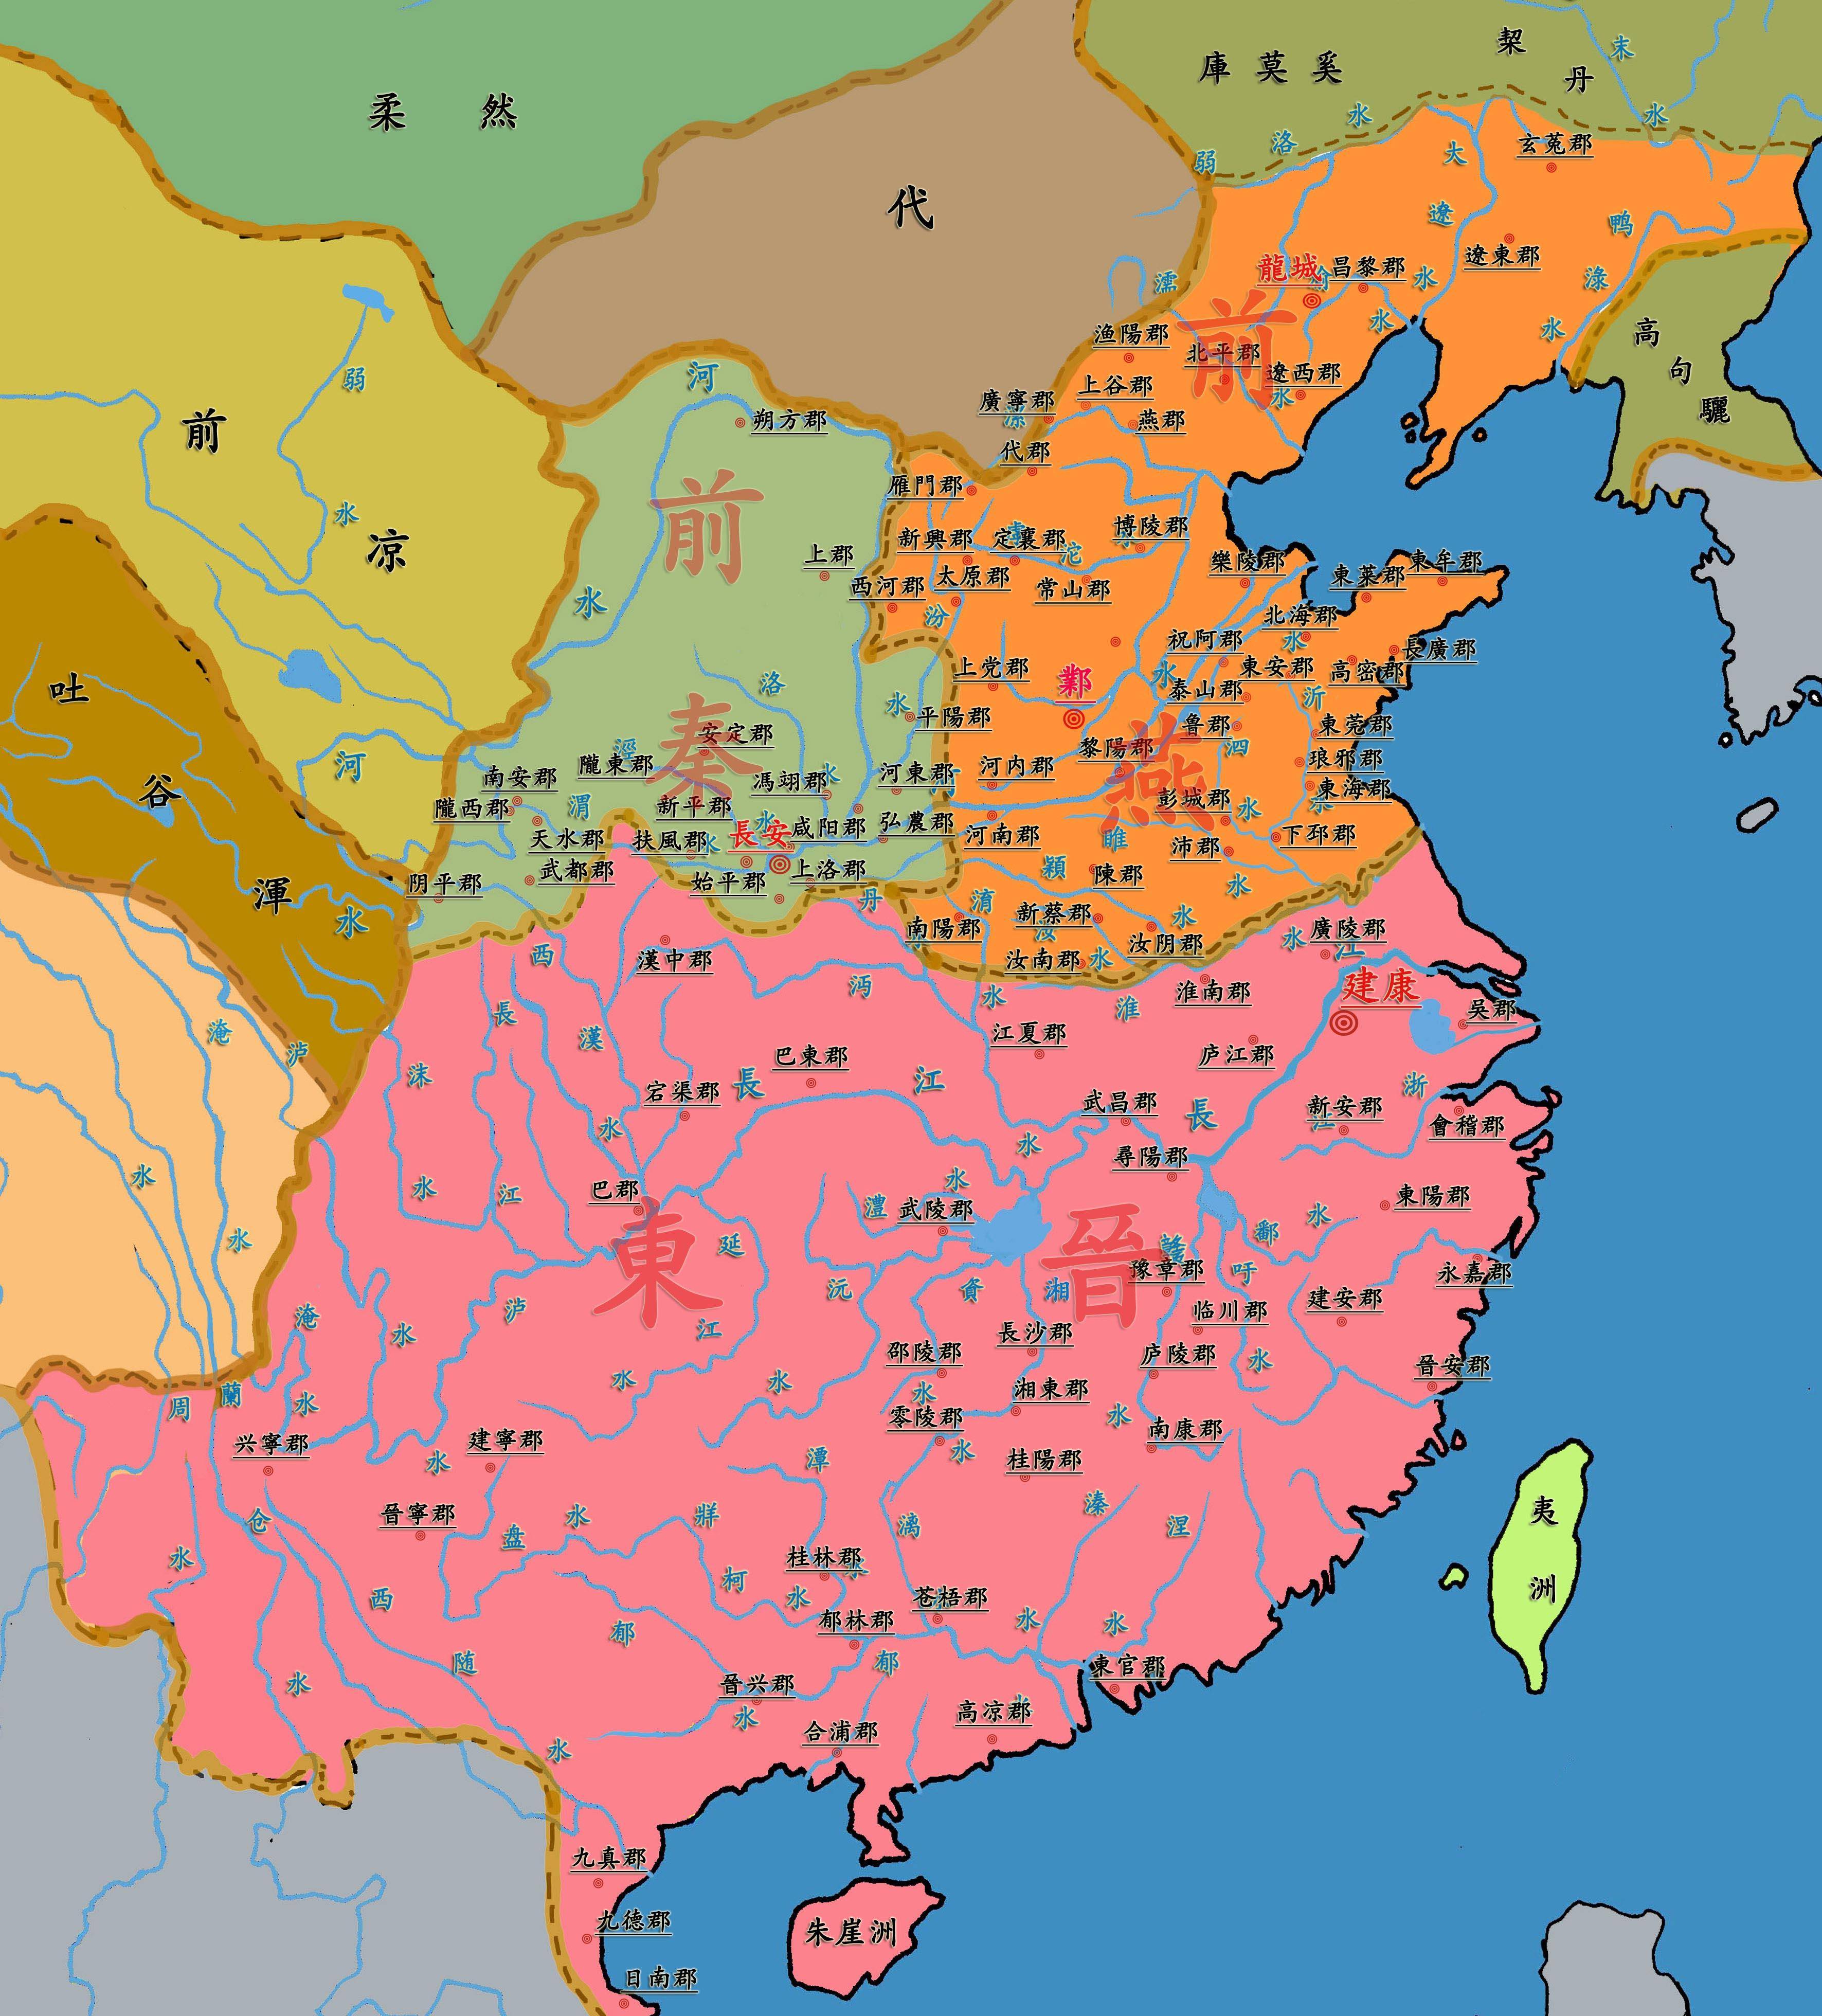 混乱的南北朝:三百多年的政局不安,王朝更迭,政局动荡